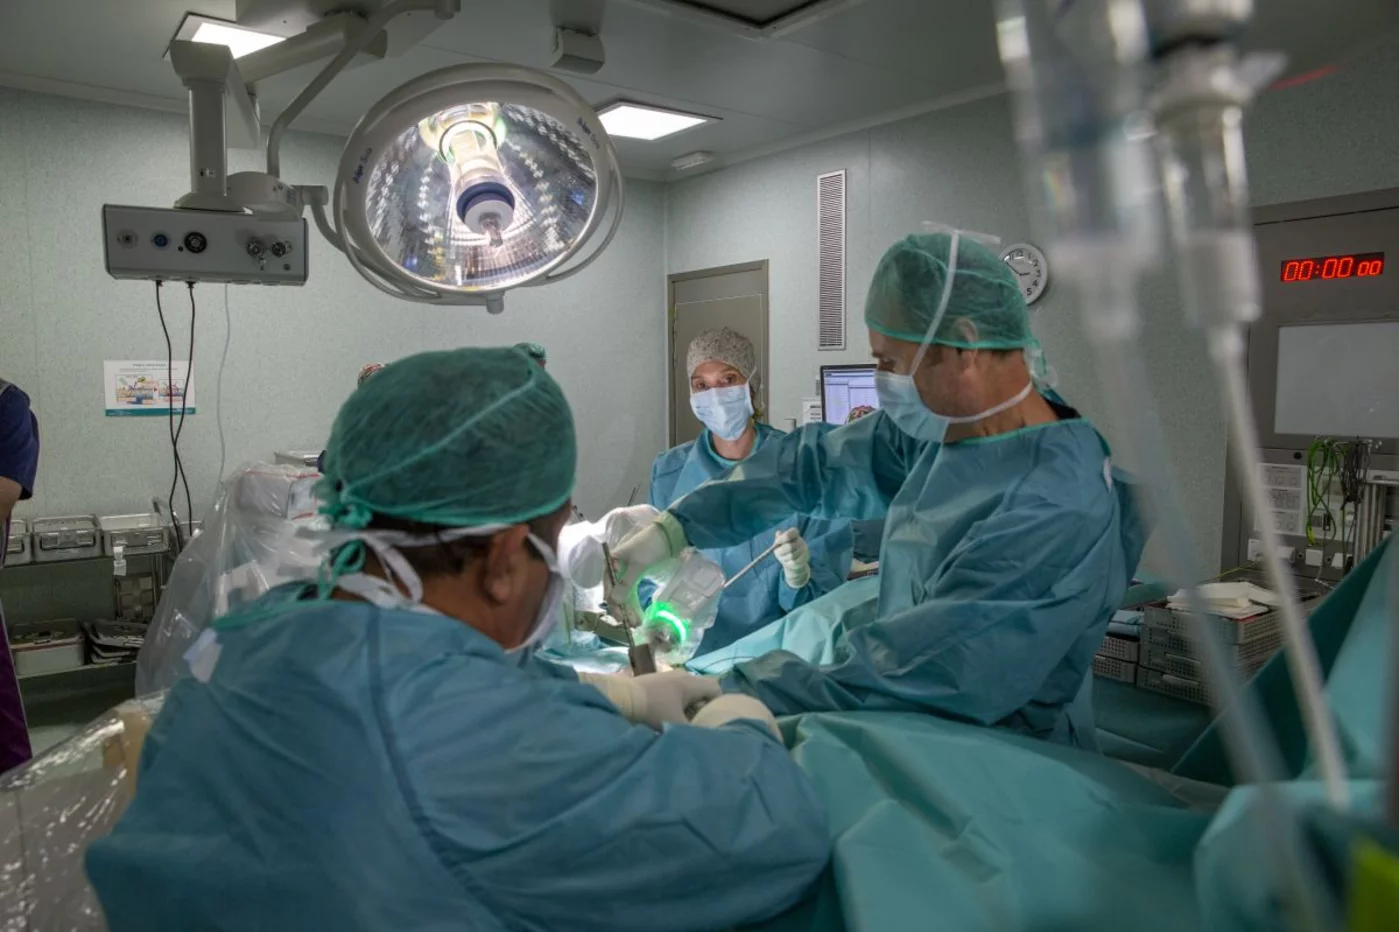 El equipo de Pablo Clavel, a la derecha durante una intervención con robot, es pionero en esta innovadora tecnología. FOTO: Hospital Quirónsalud Barcelona.